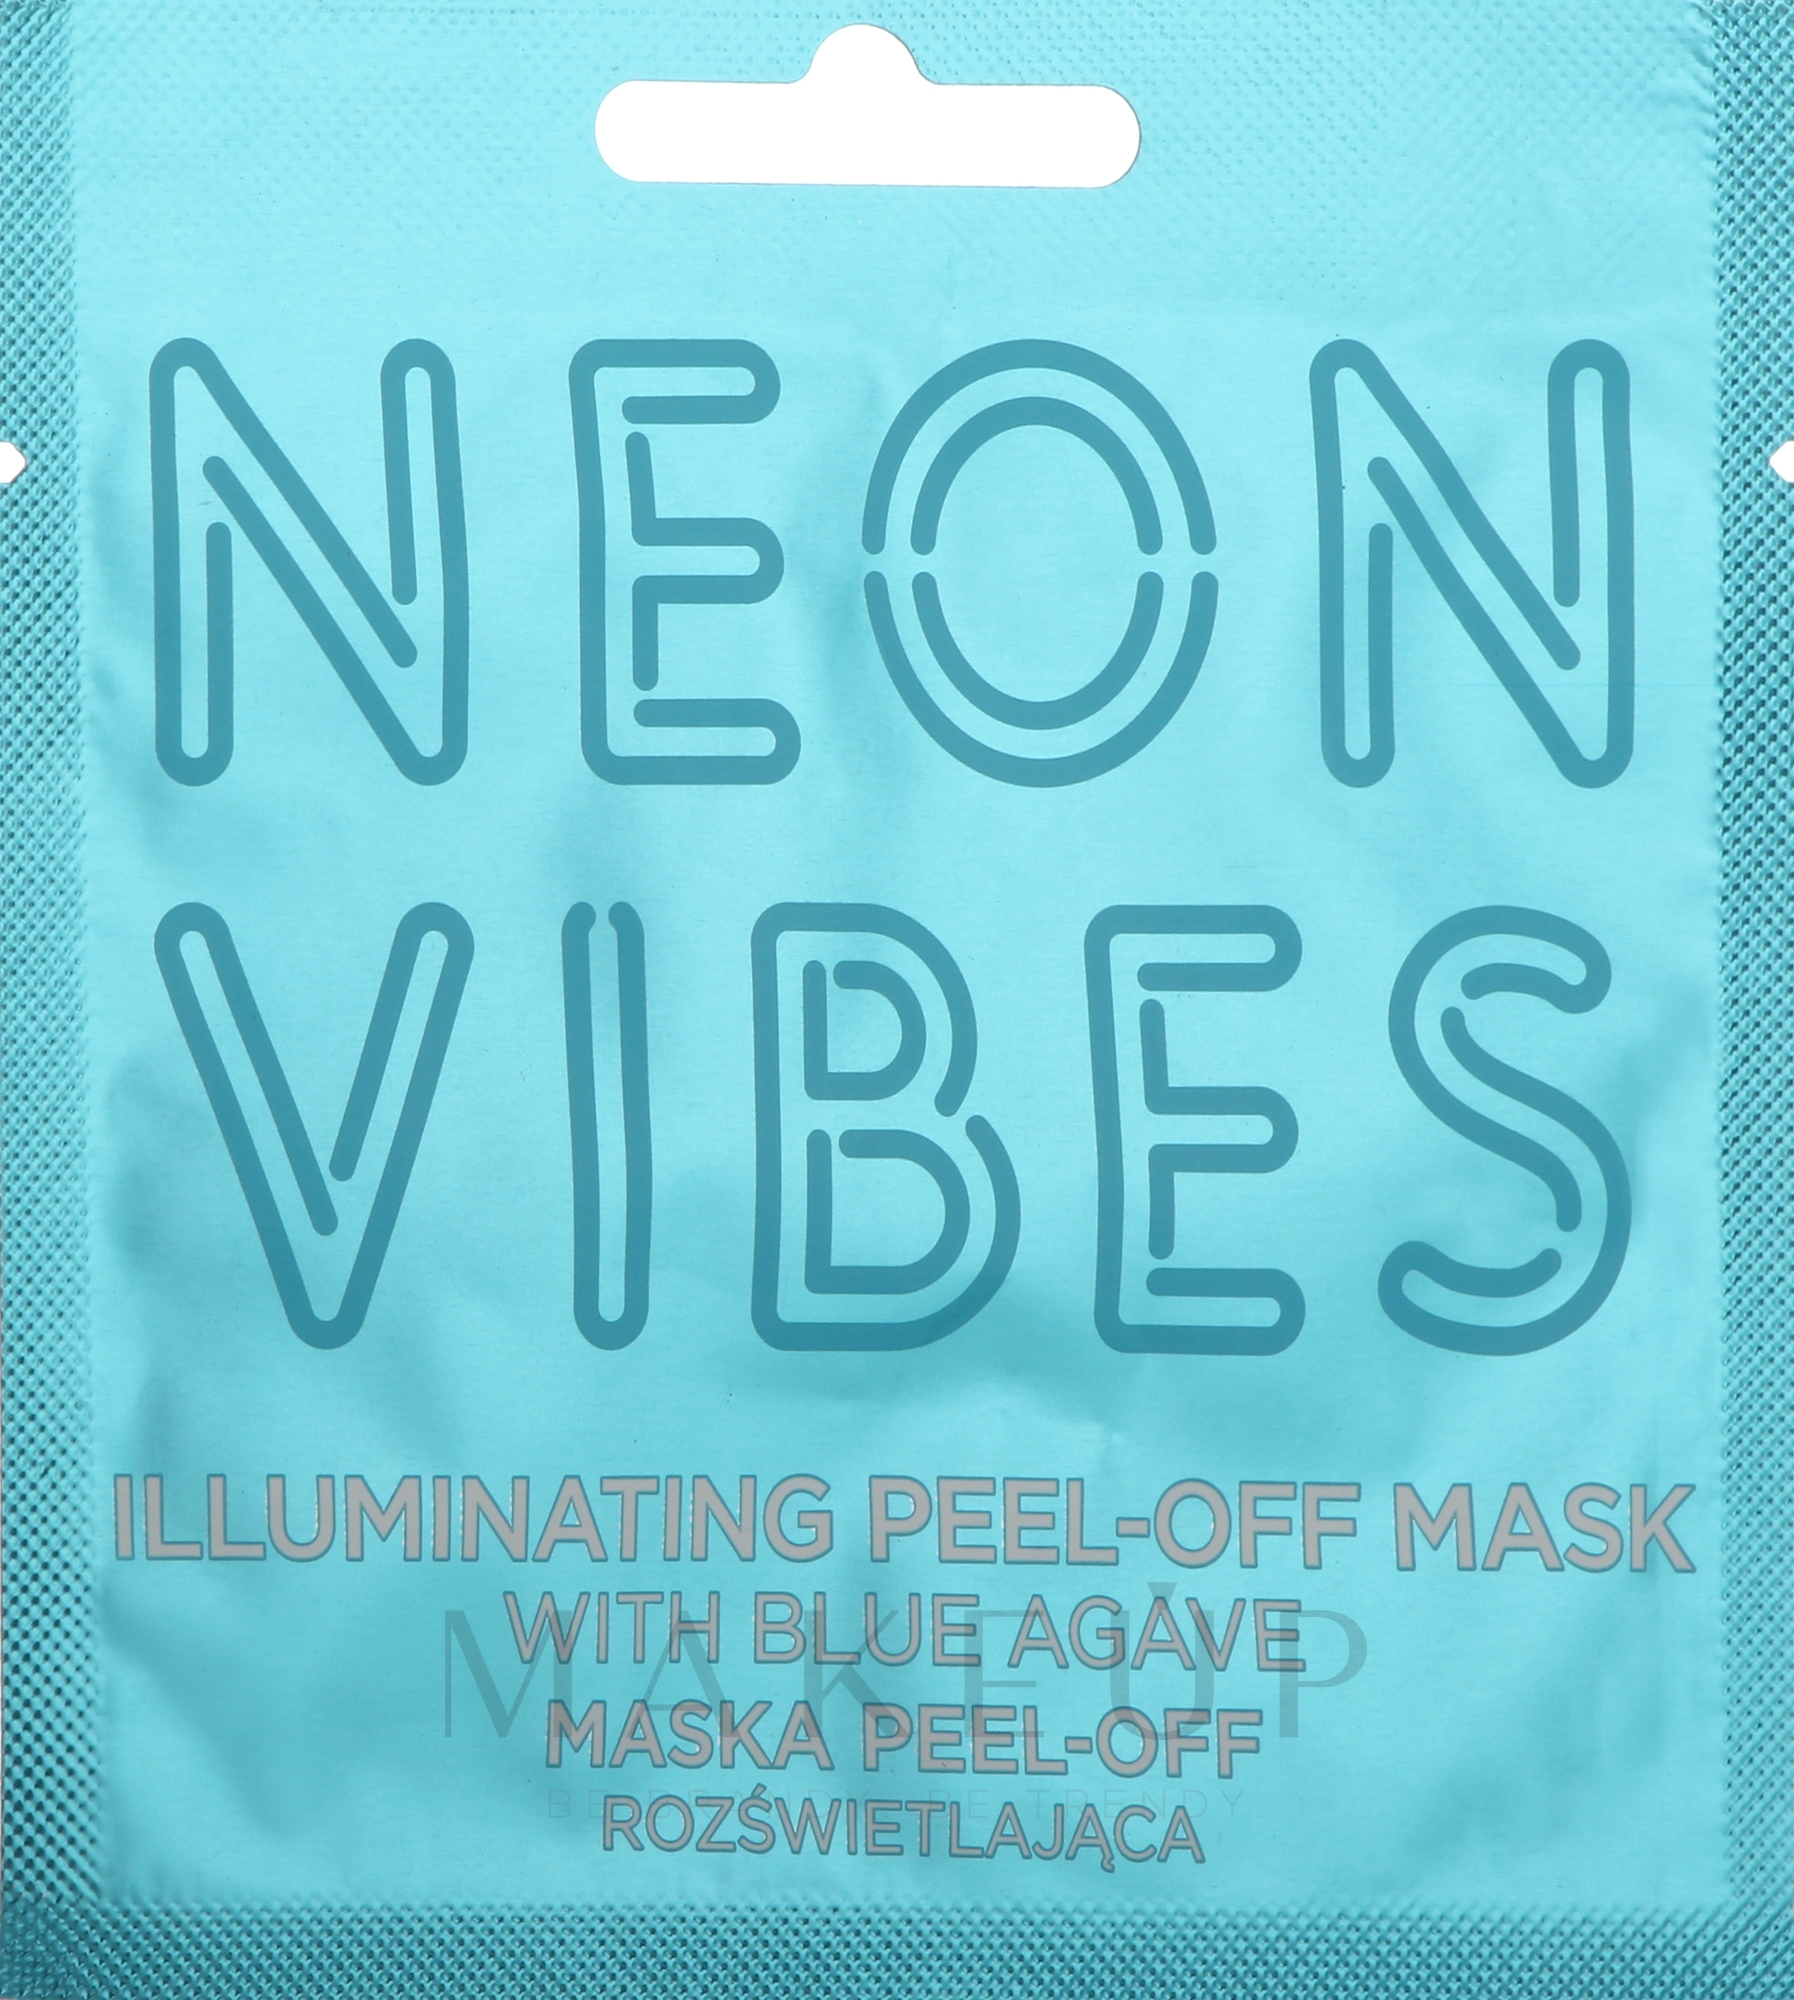 Reinigende Peel-Off-Maske für müde und stumpfe Haut mit blauer Agave - Marion Neon Vibes Illuminating Peel-Off Mask — Foto 8 g